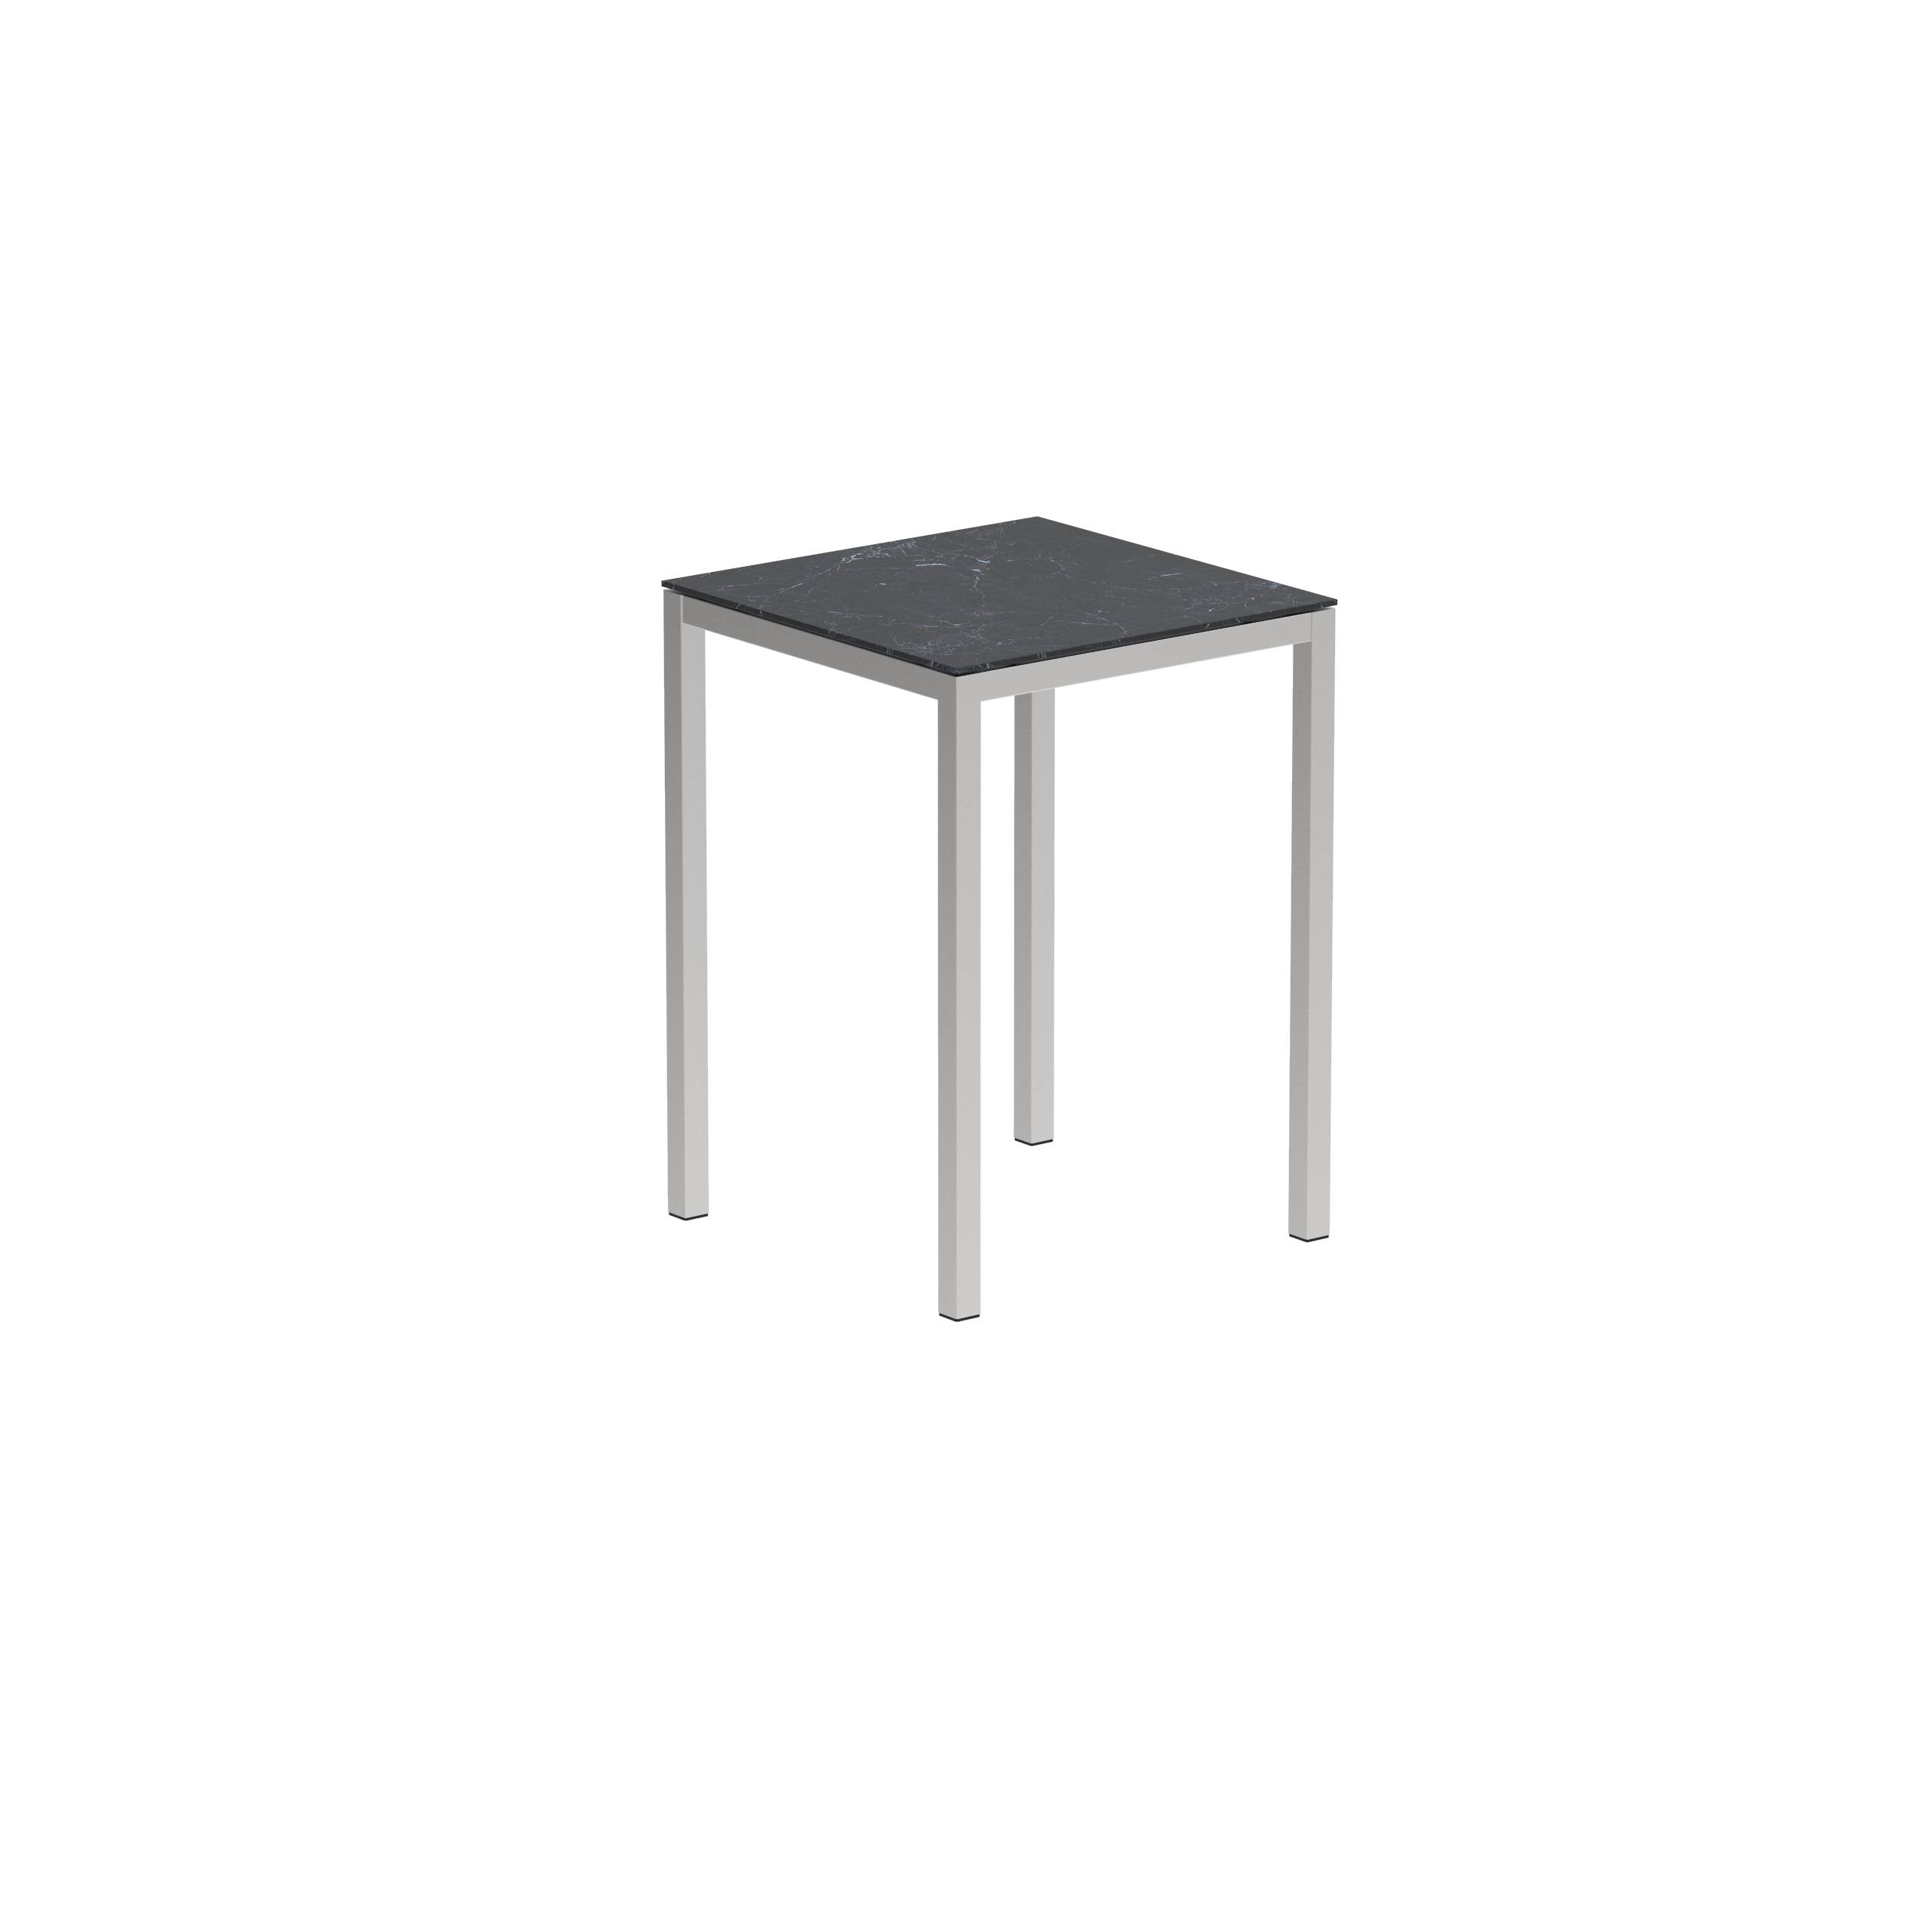 Taboela High Table 80x80cm + Ceramic Top Nero Marquina